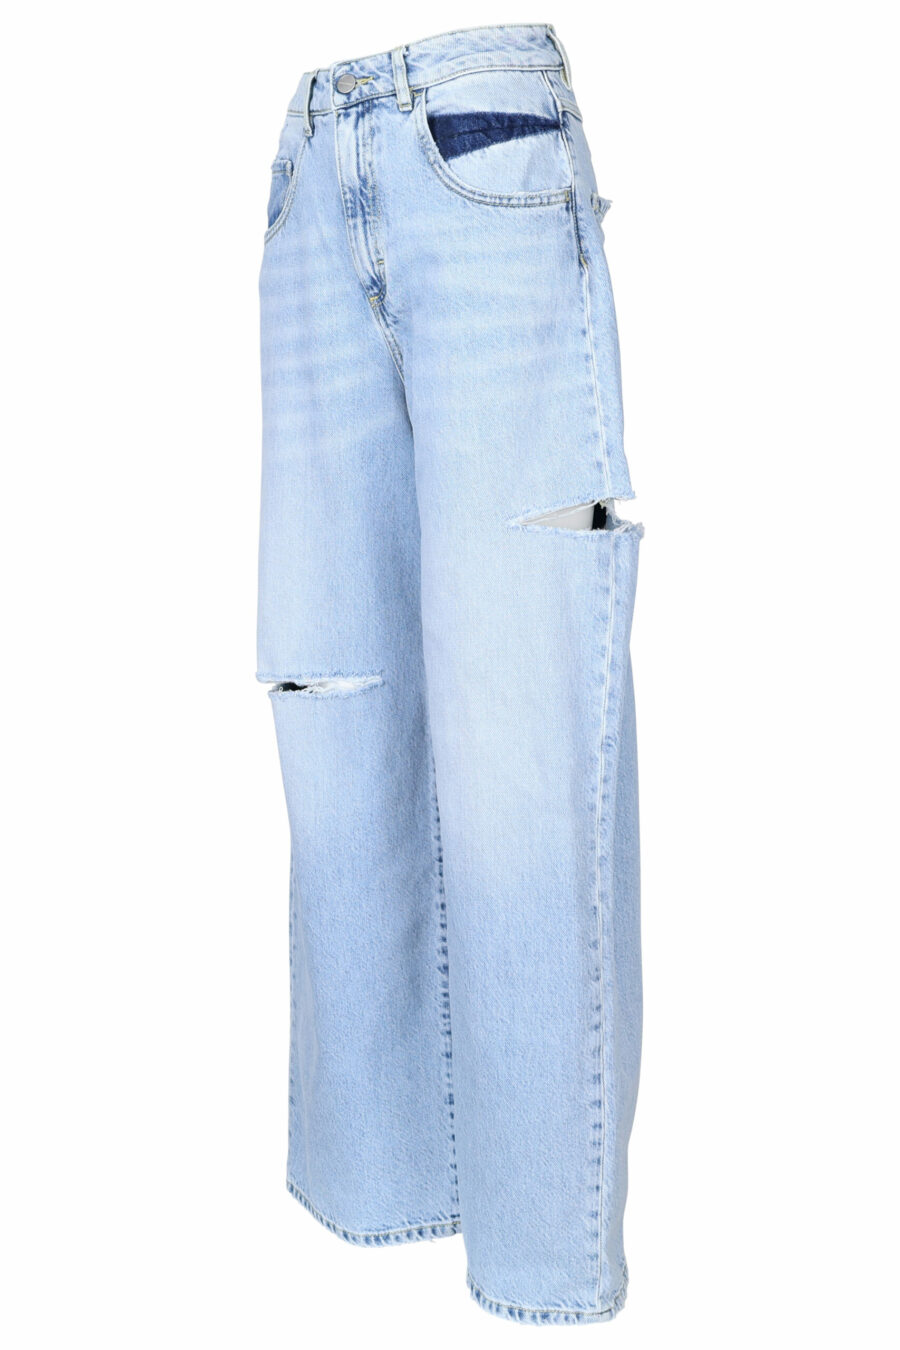 Pantalón vaquero azul "poppy" con rotos - 8052691167298 1 scaled